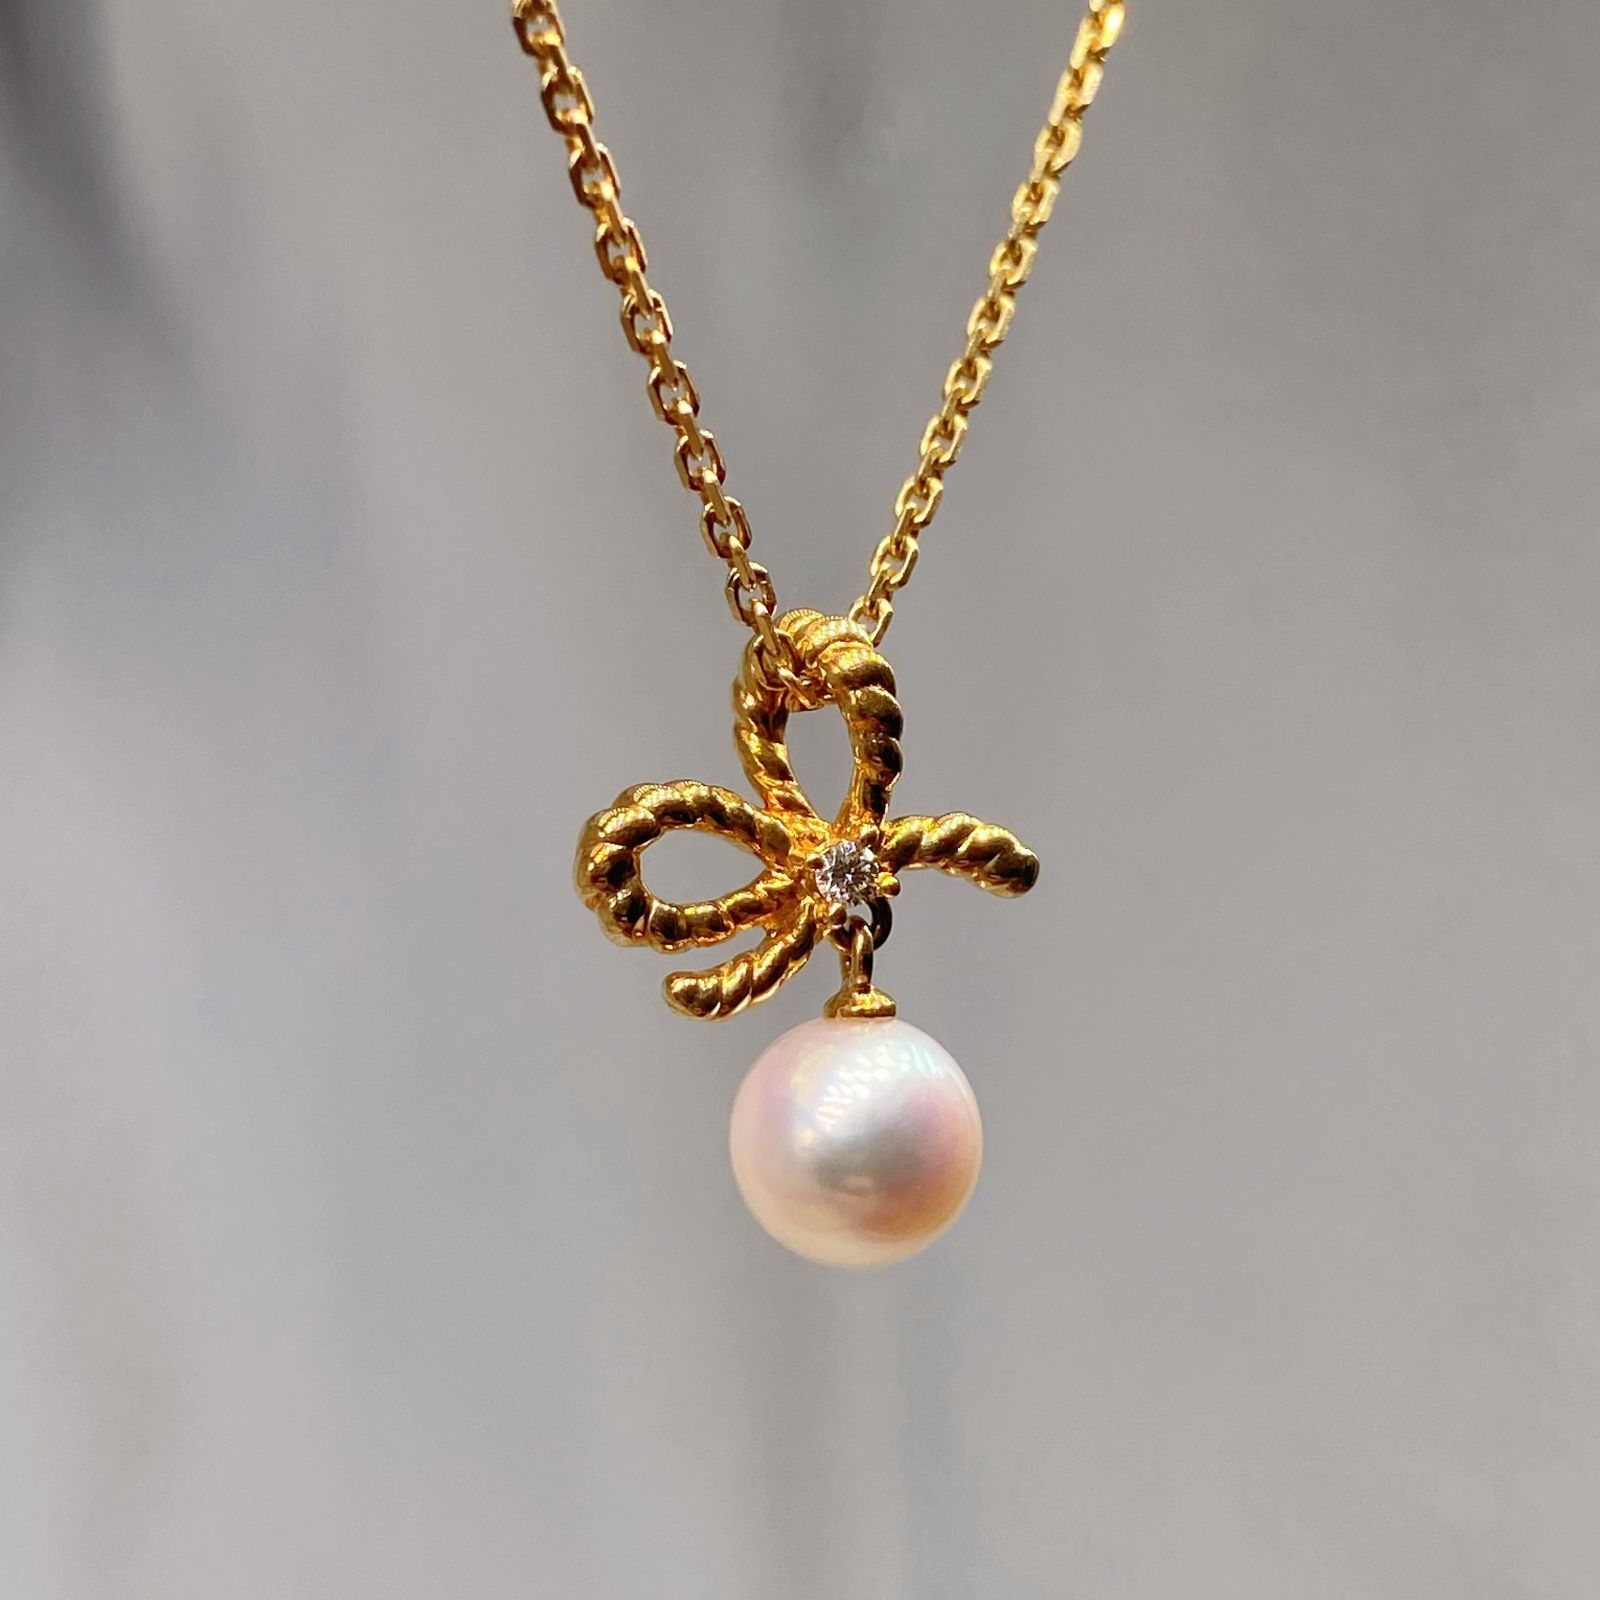 Pola ポーラ　本真珠と本物ダイヤモンドpt900ネックレス